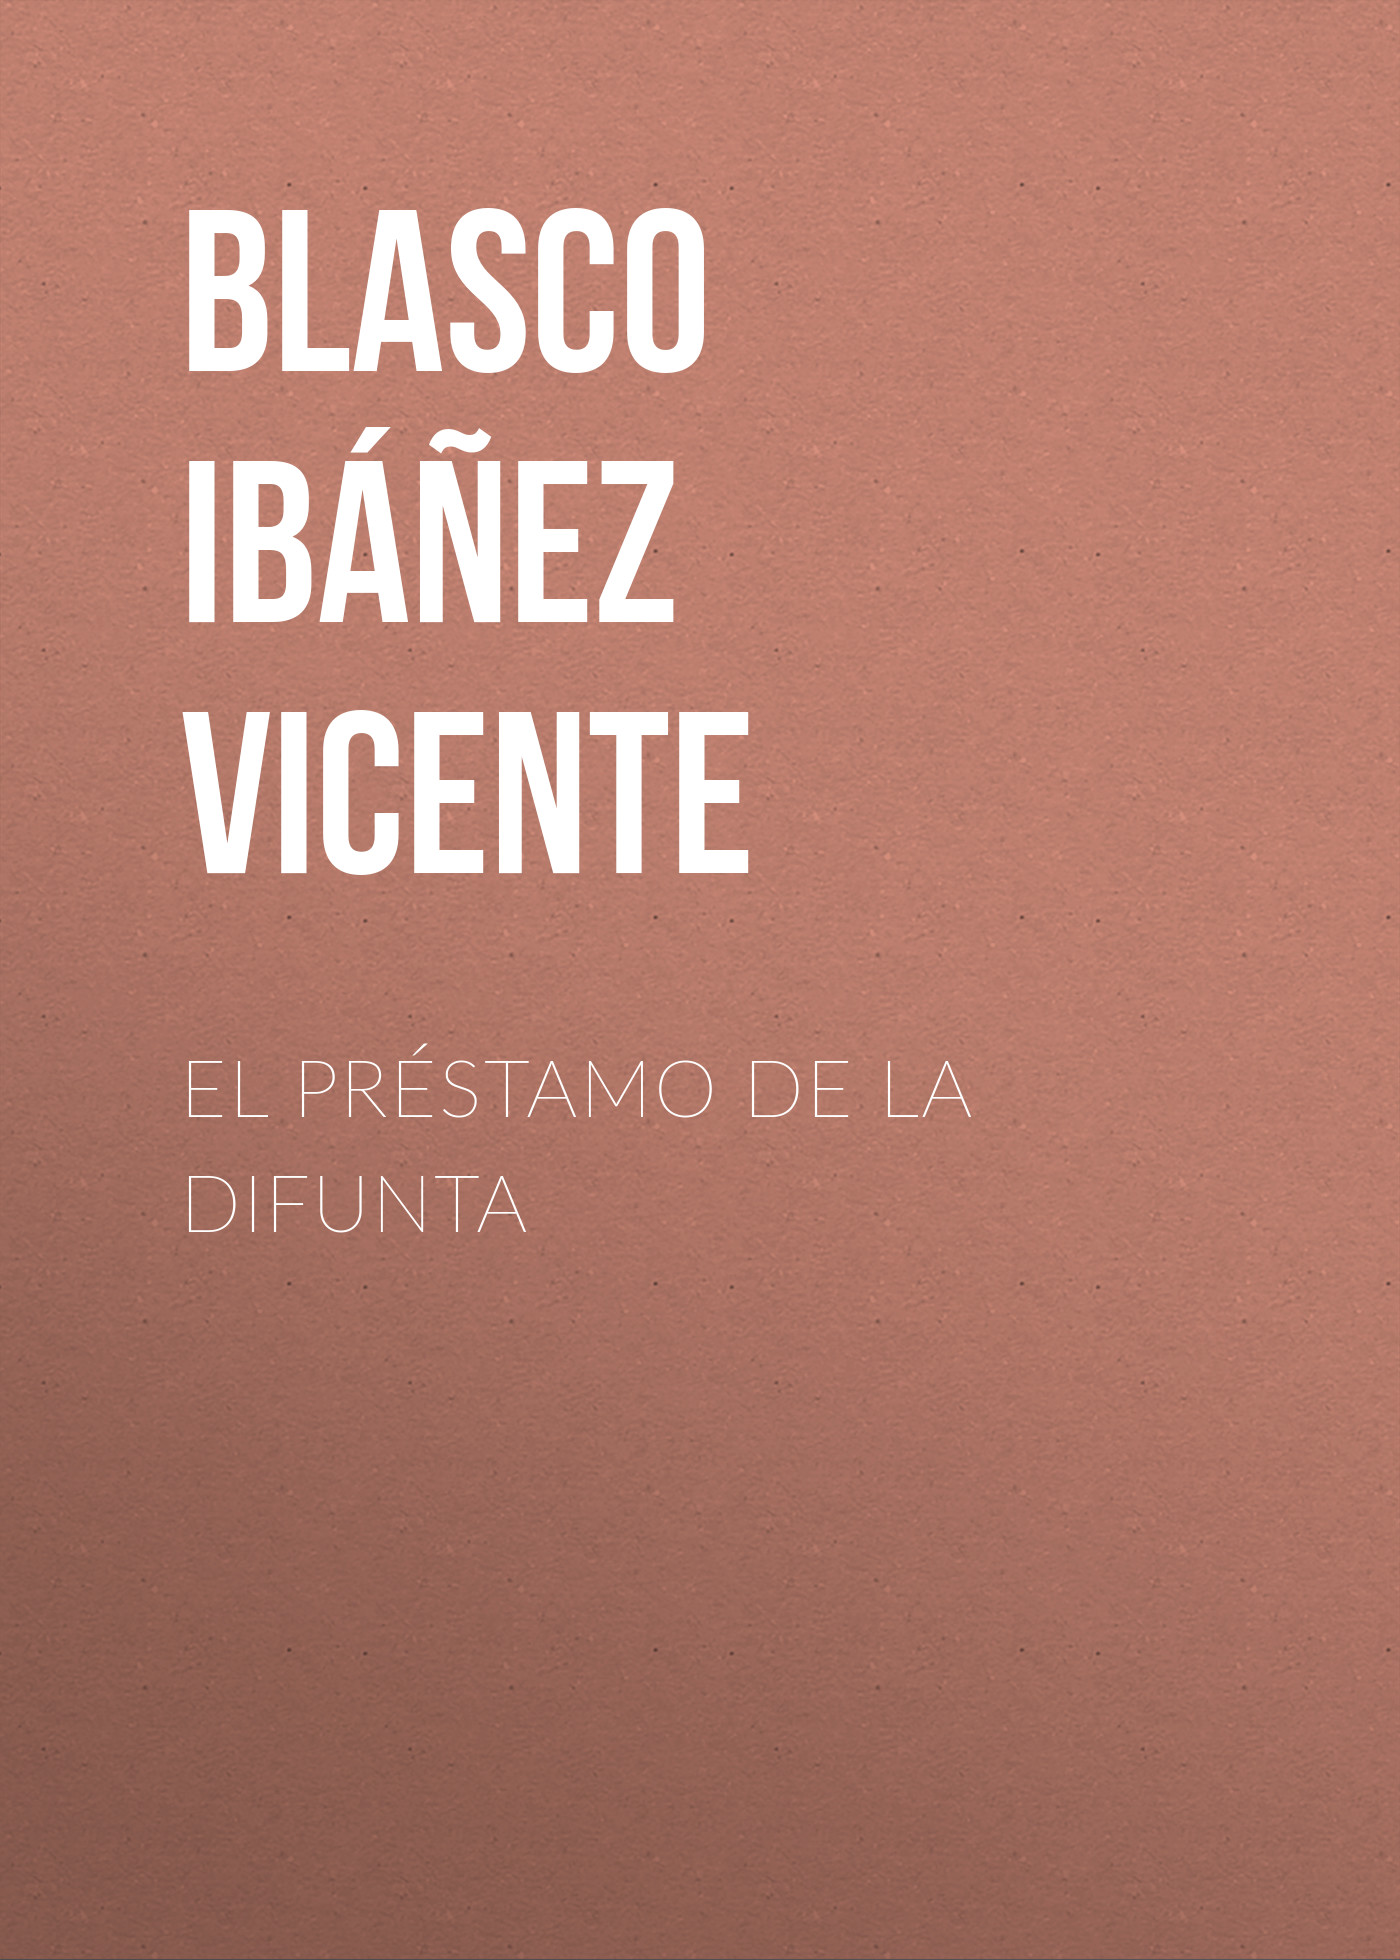 Книга El préstamo de la difunta из серии , созданная Vicente Blasco Ibáñez, может относится к жанру Зарубежная классика, Зарубежная старинная литература. Стоимость электронной книги El préstamo de la difunta с идентификатором 36363190 составляет 0 руб.